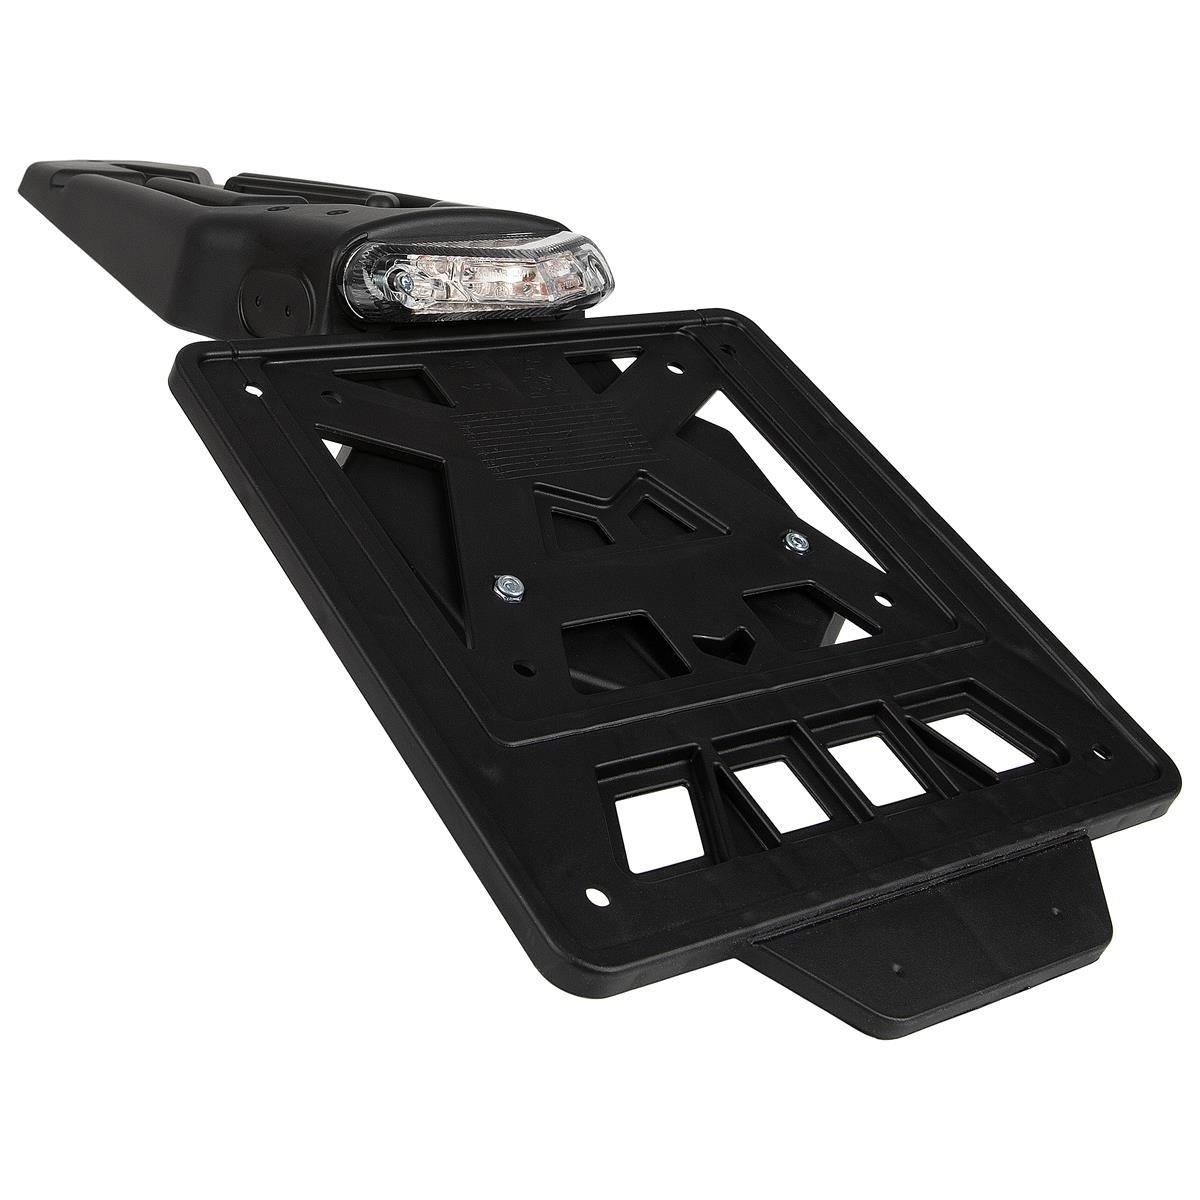 RTECH License Plate Holder Integra Incl. Taillight, Black, 60 Degrees Tilt